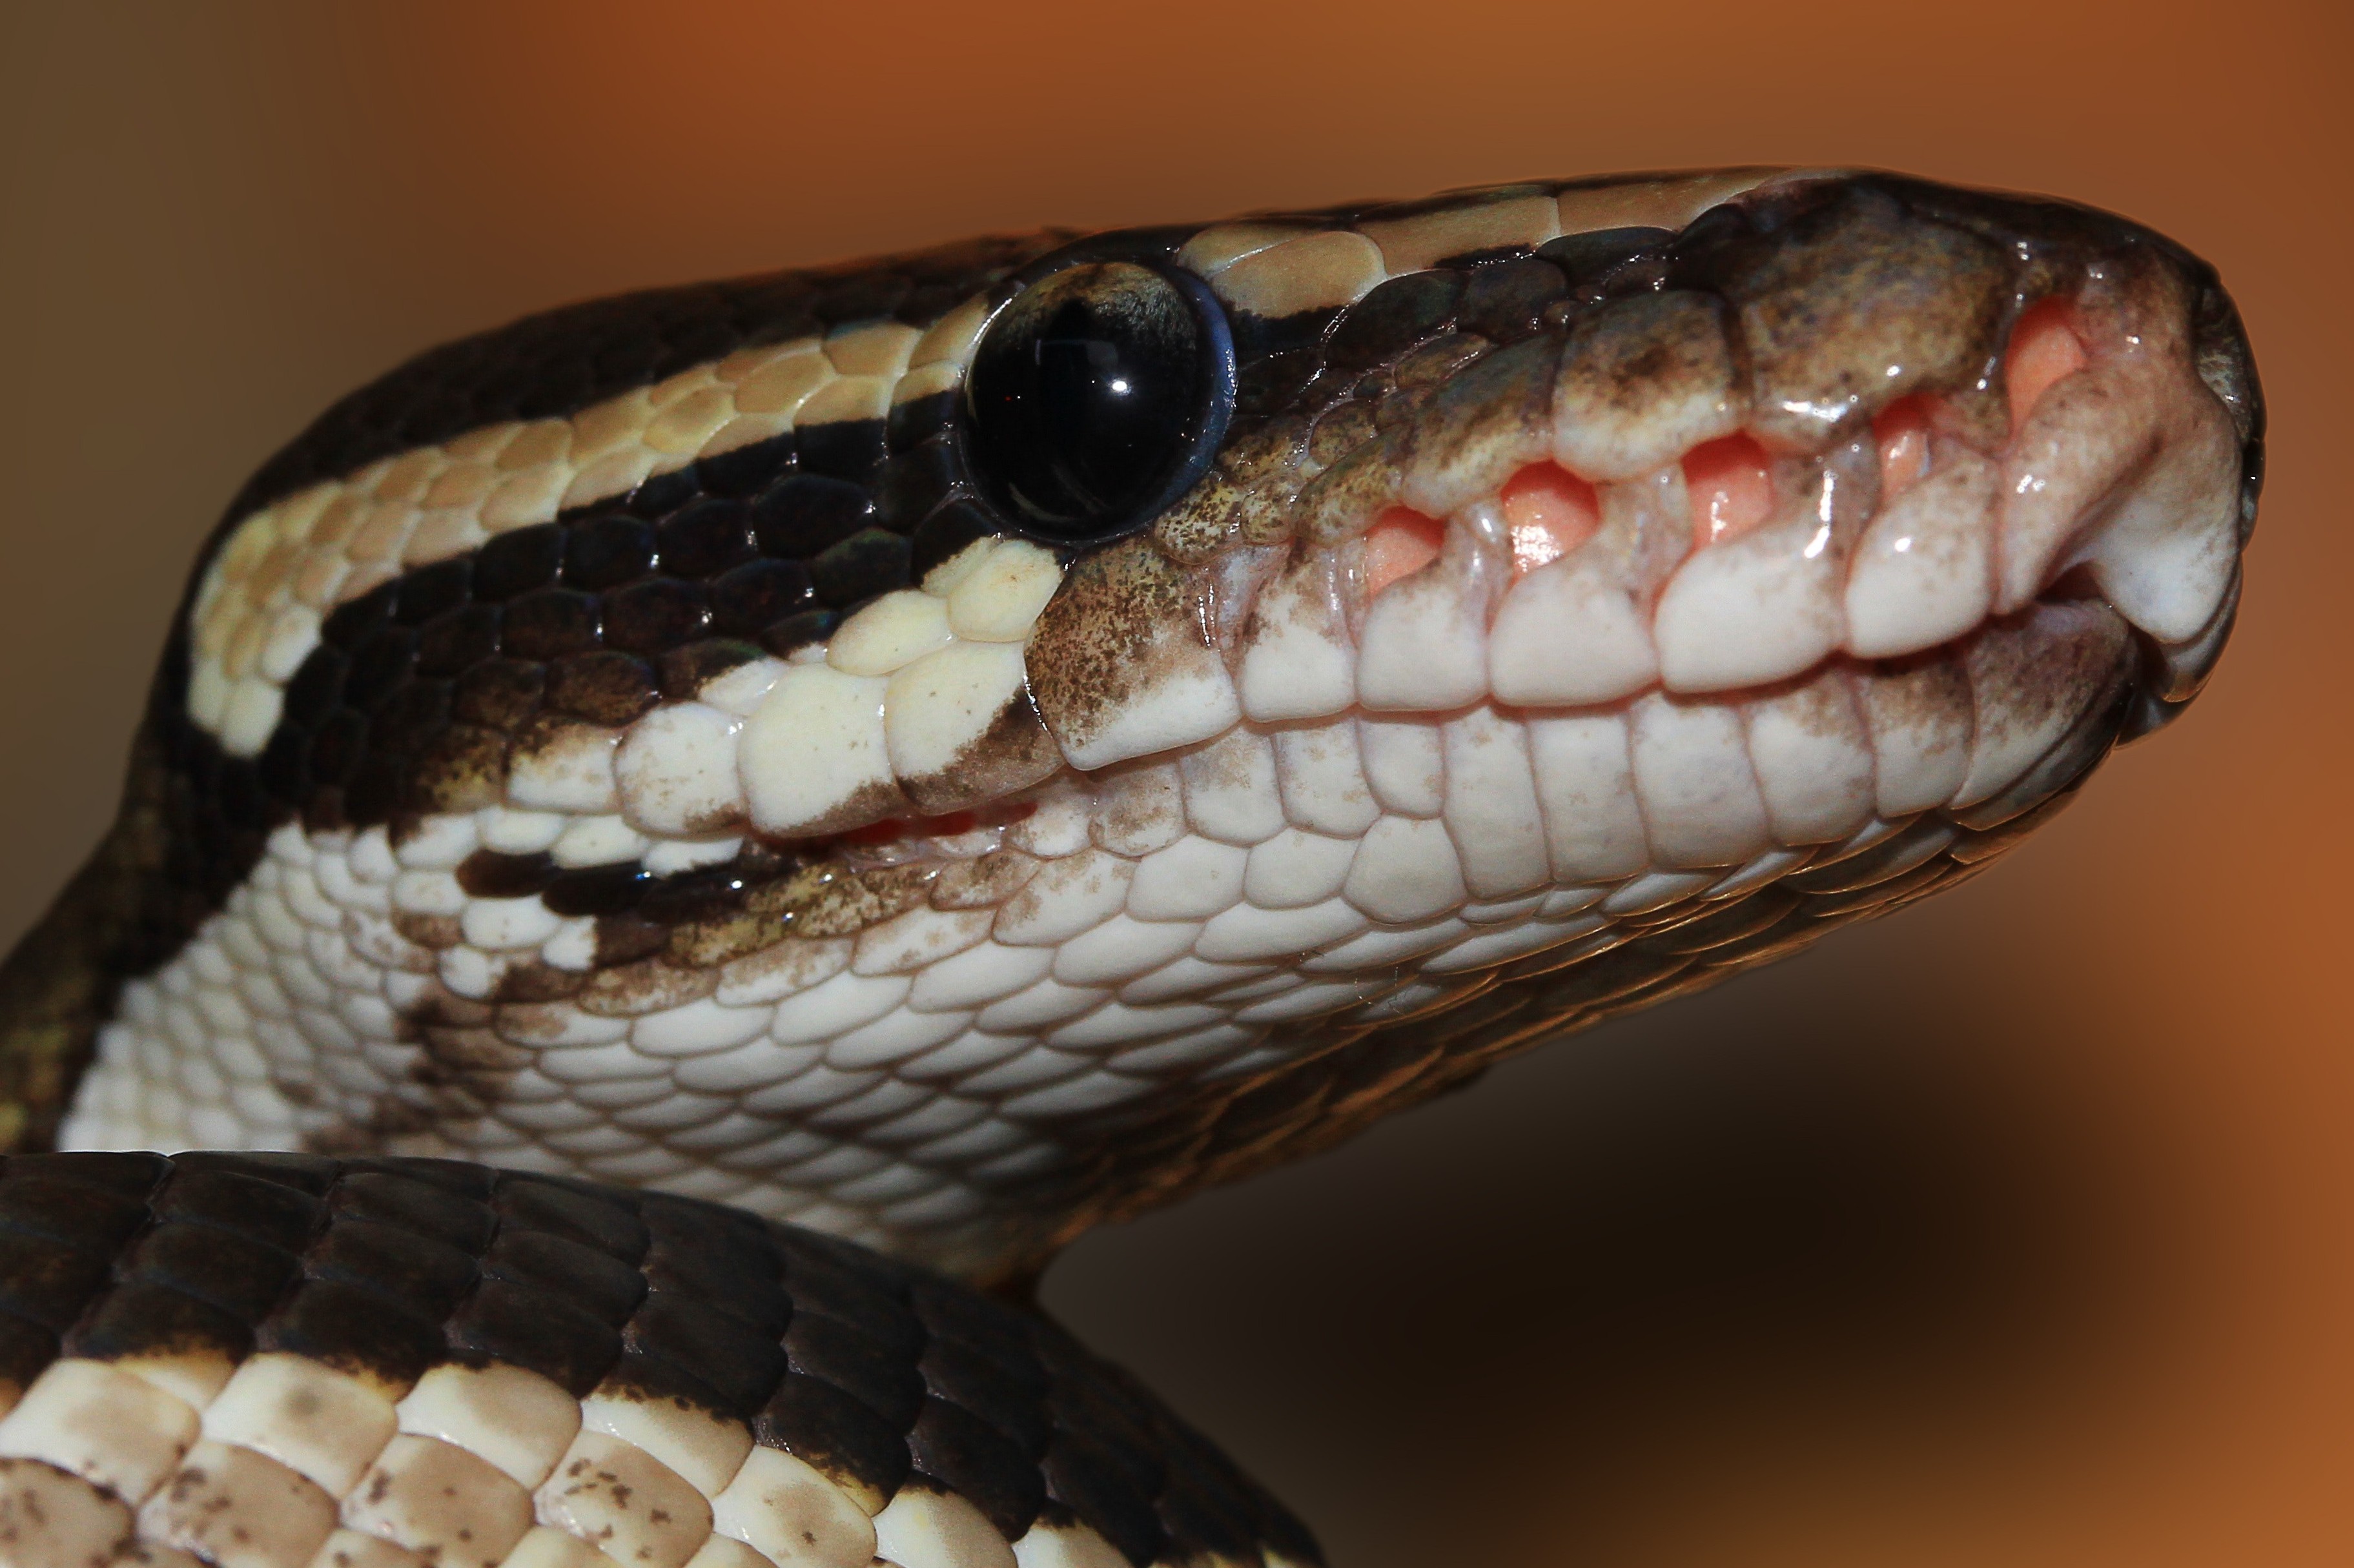 Head python